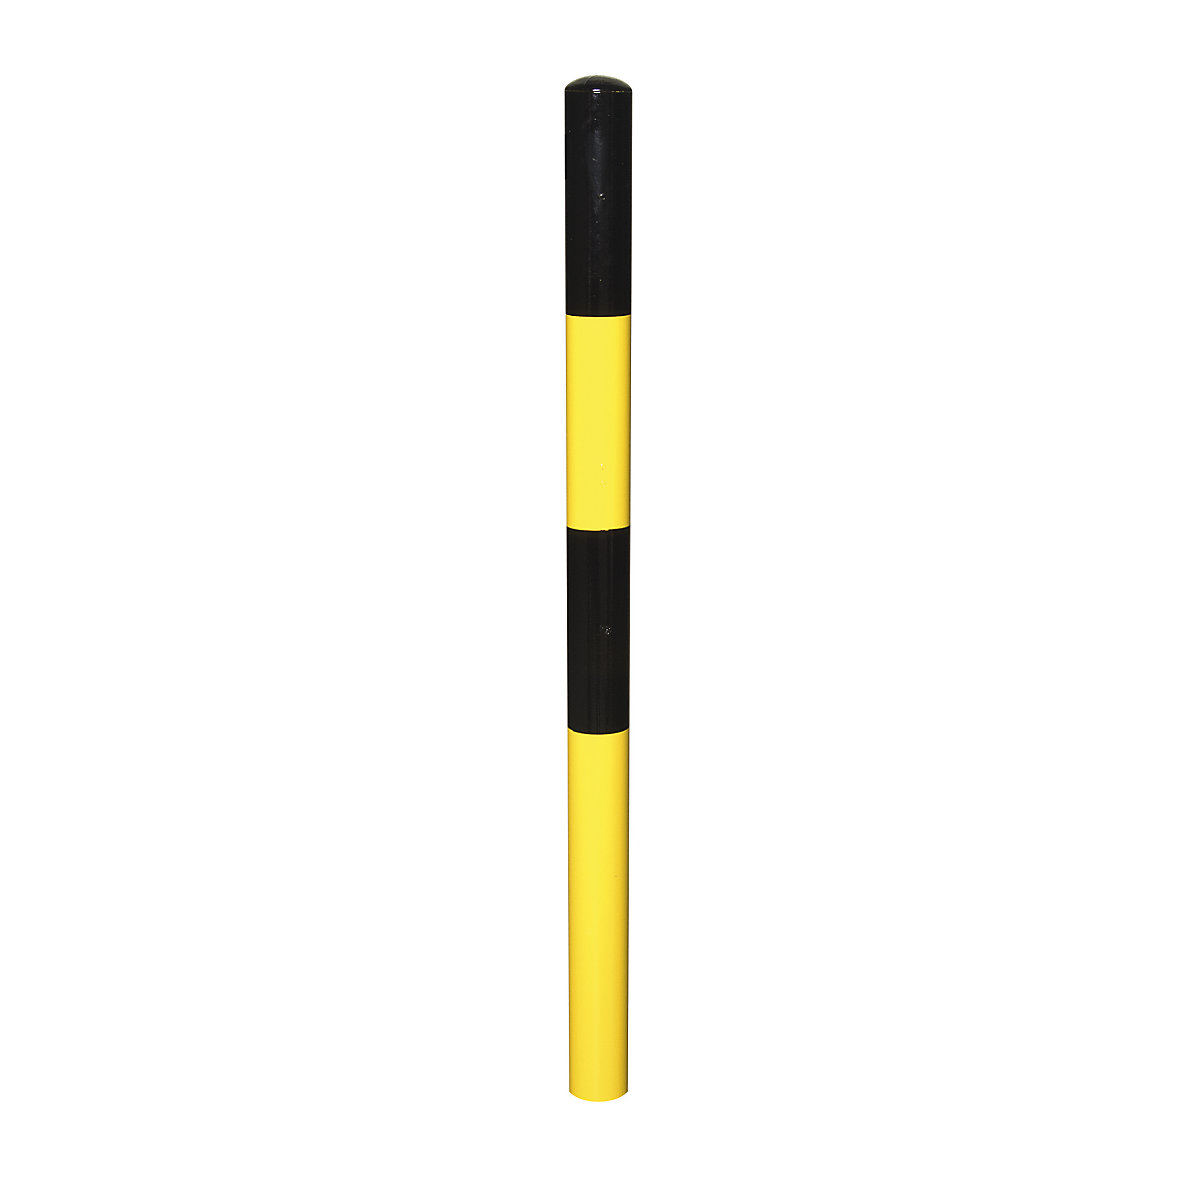 Zahradzovací stĺpik, na zabetónovanie, Ø 60 mm, čierno-žlto lakované, 2 oká-12